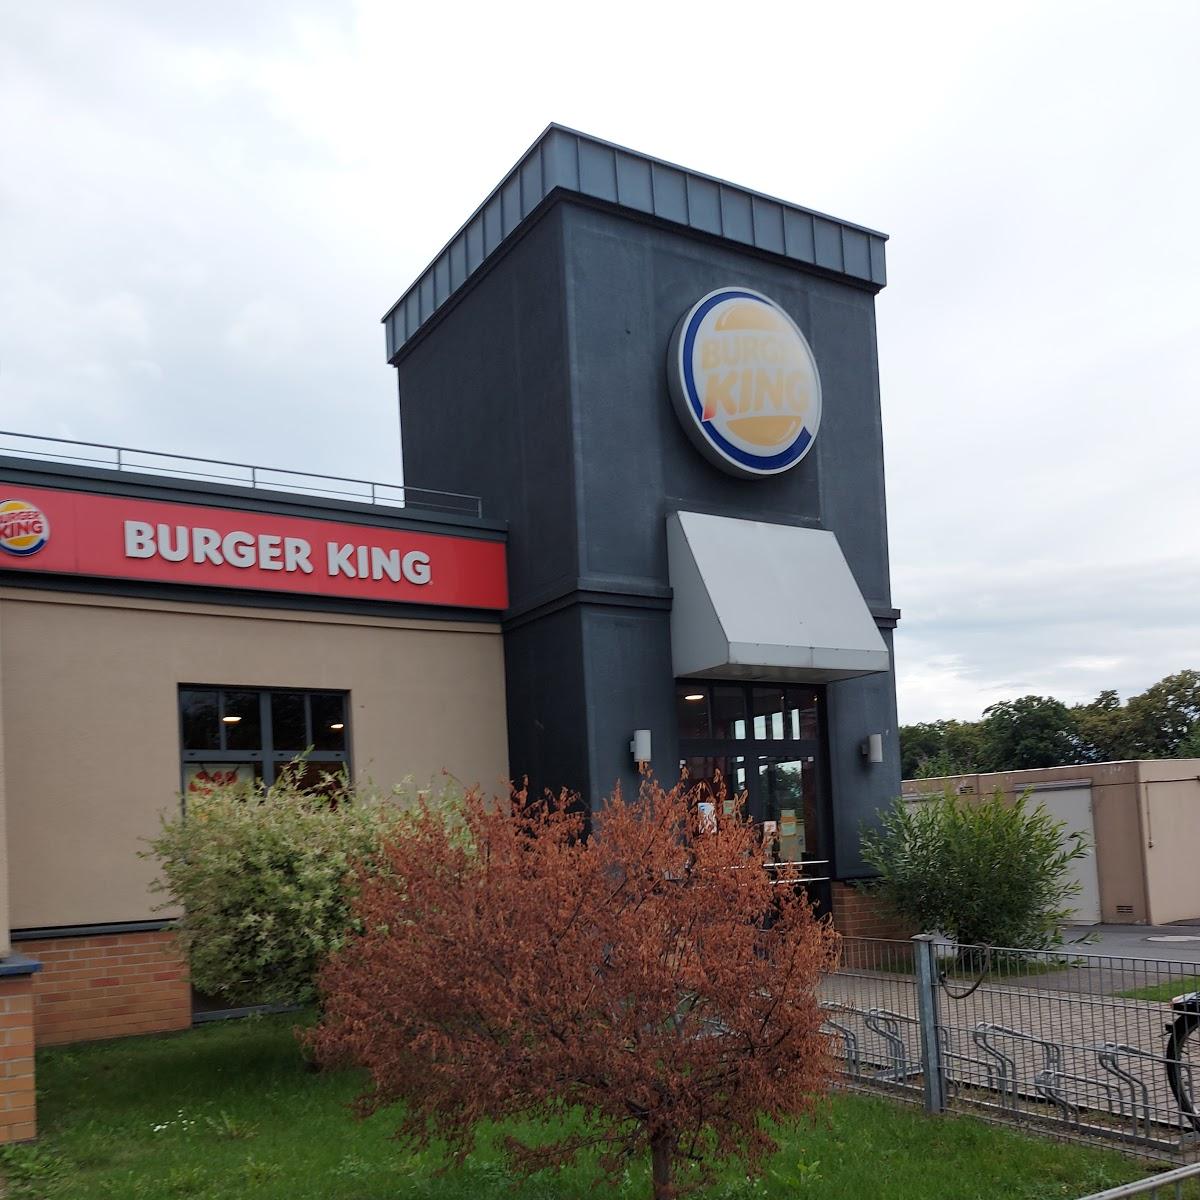 Restaurant "Burger King" in Bonn